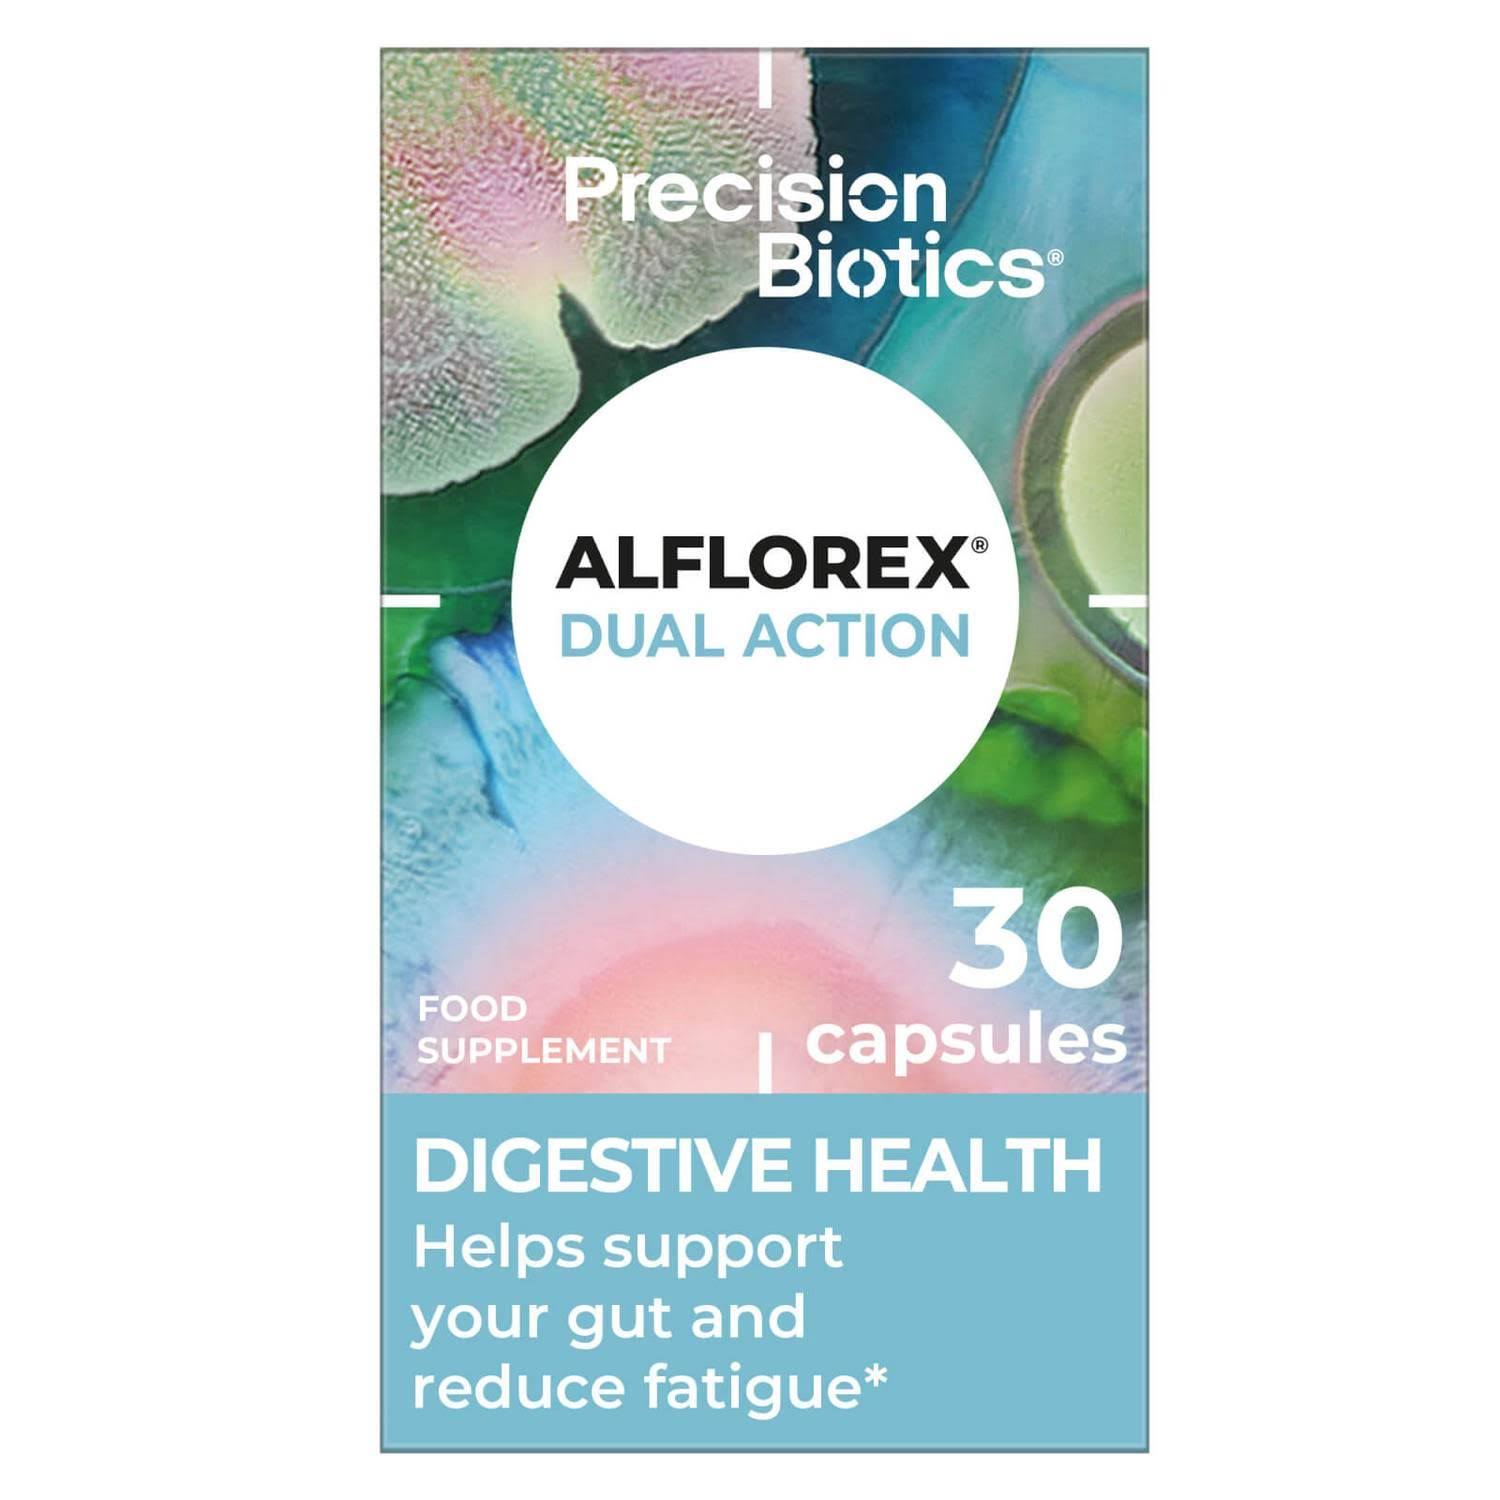 Precisionbiotics Alflorex Chewable